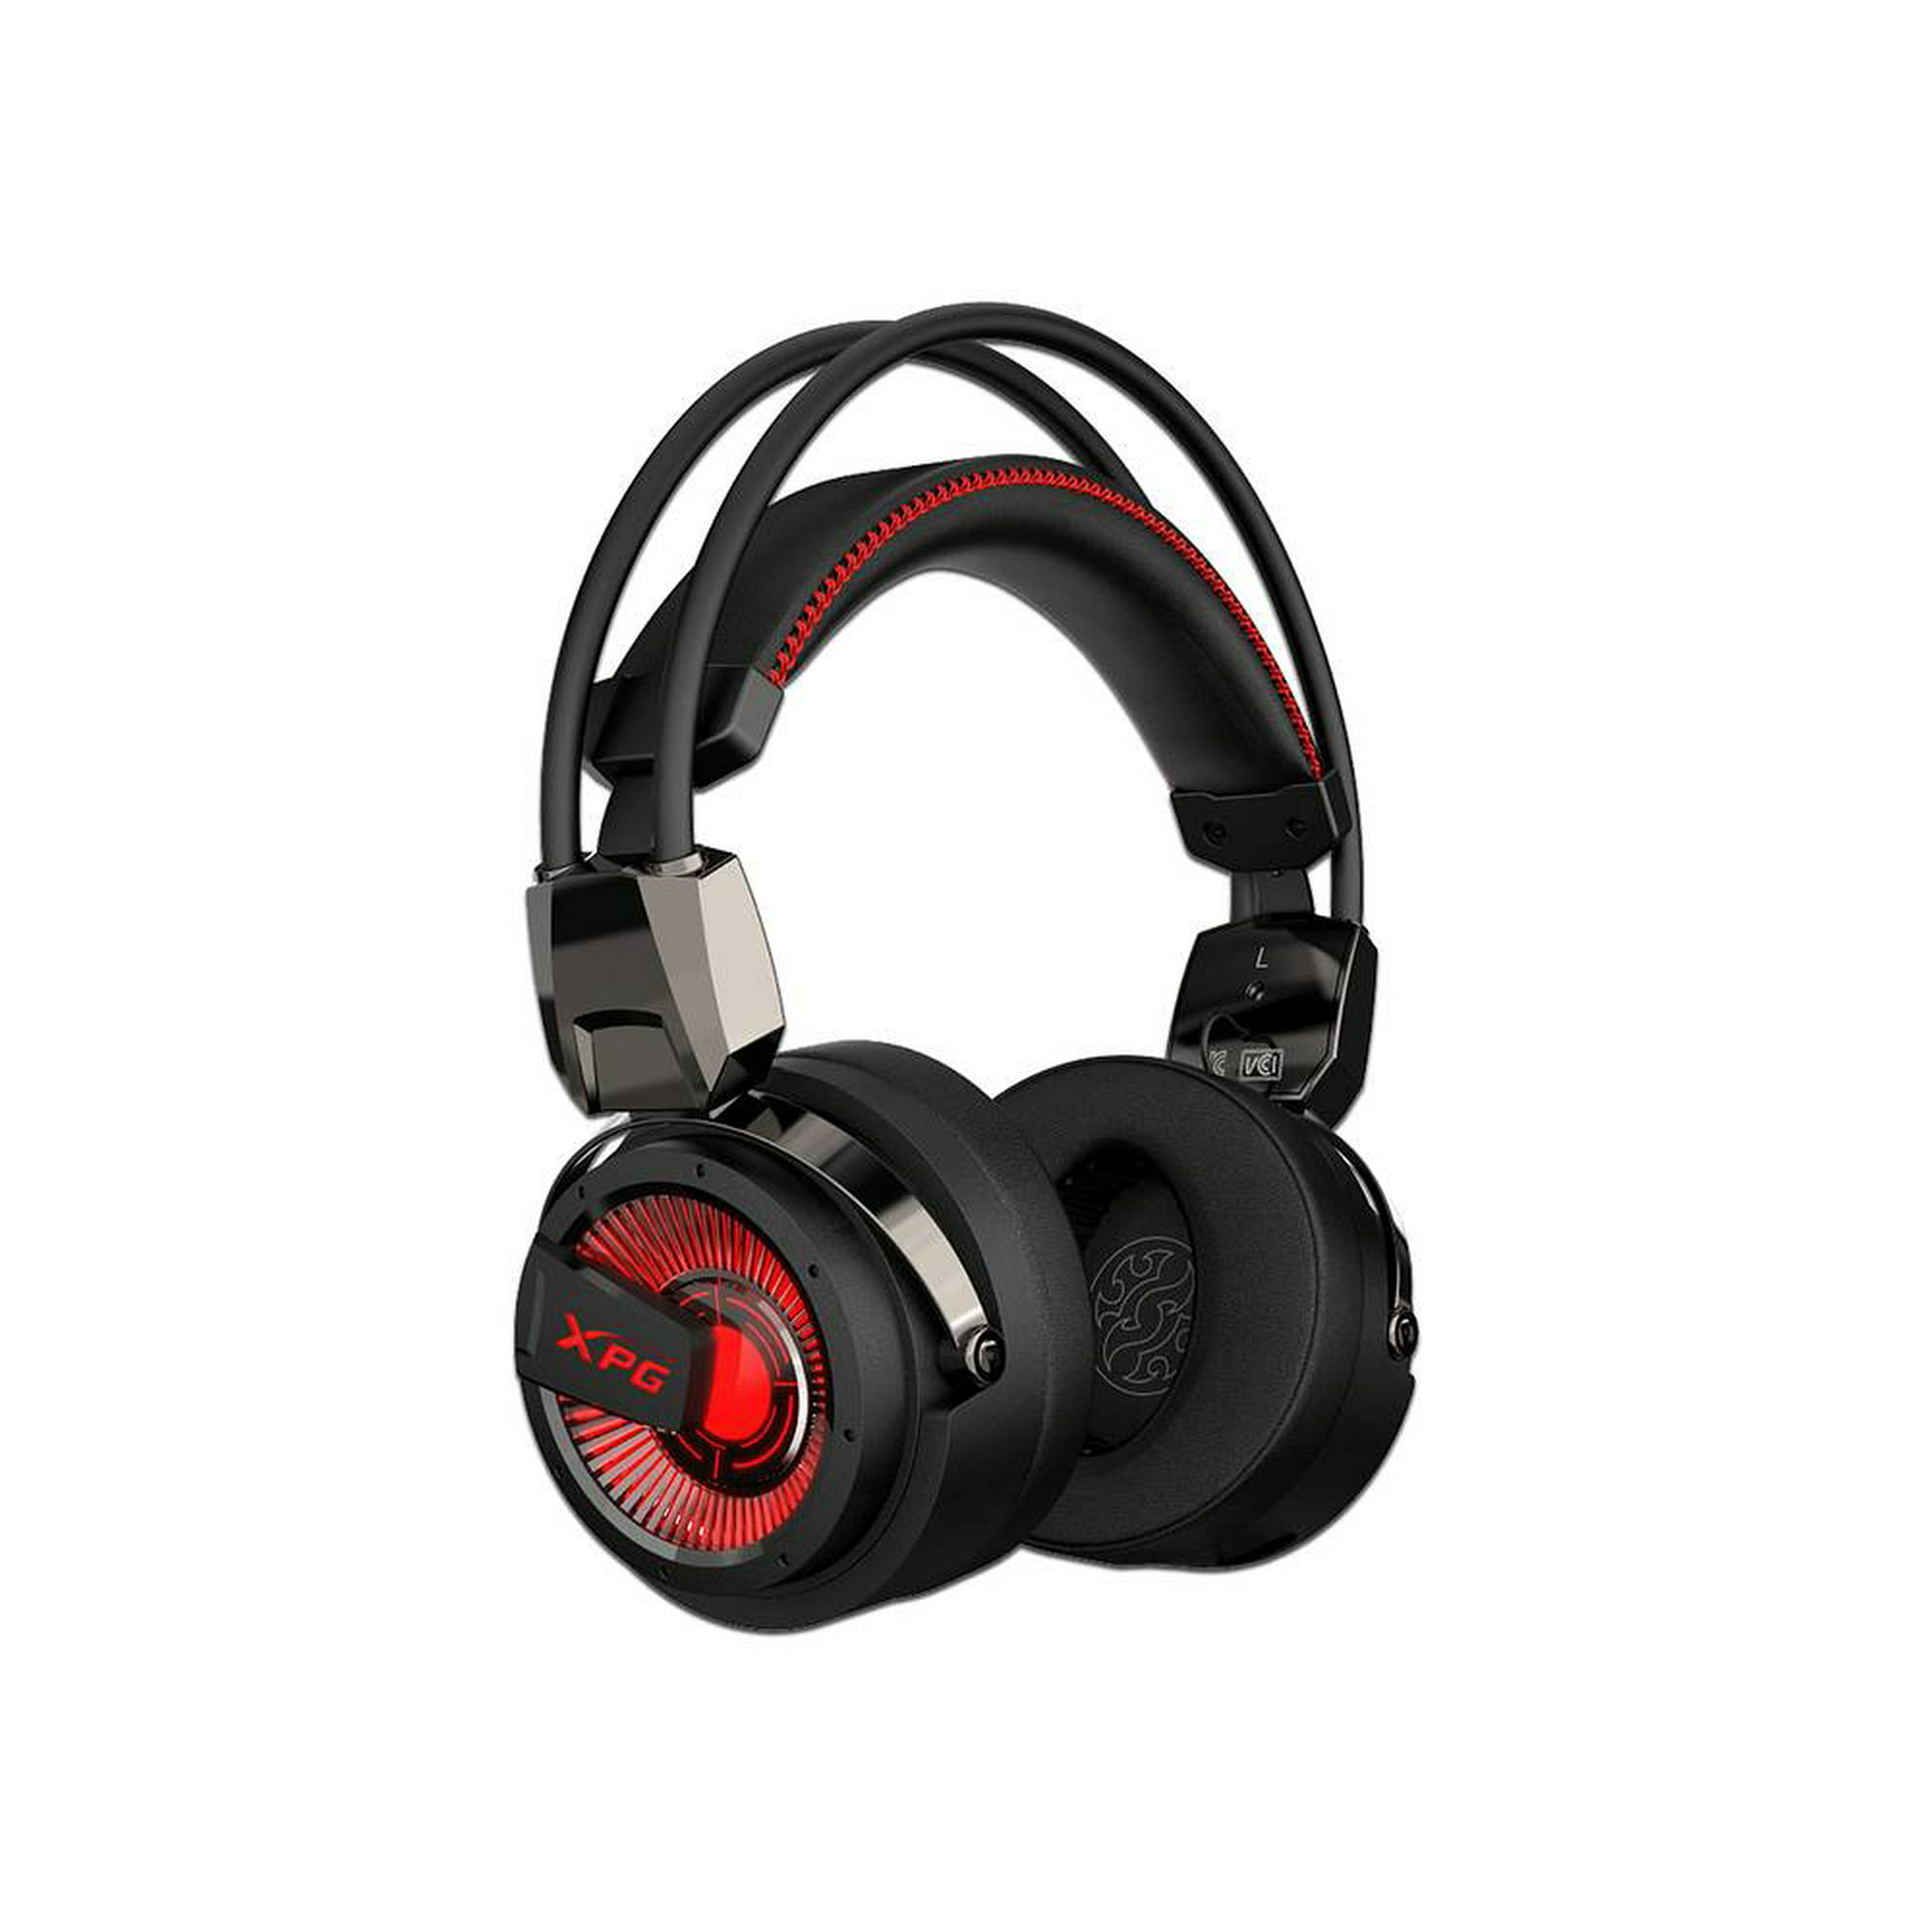 Audífonos de Diadema con Micrófono para Gaming Gadgets and fun Eclixe Auriculares  Gamer G200 Rojo con negro